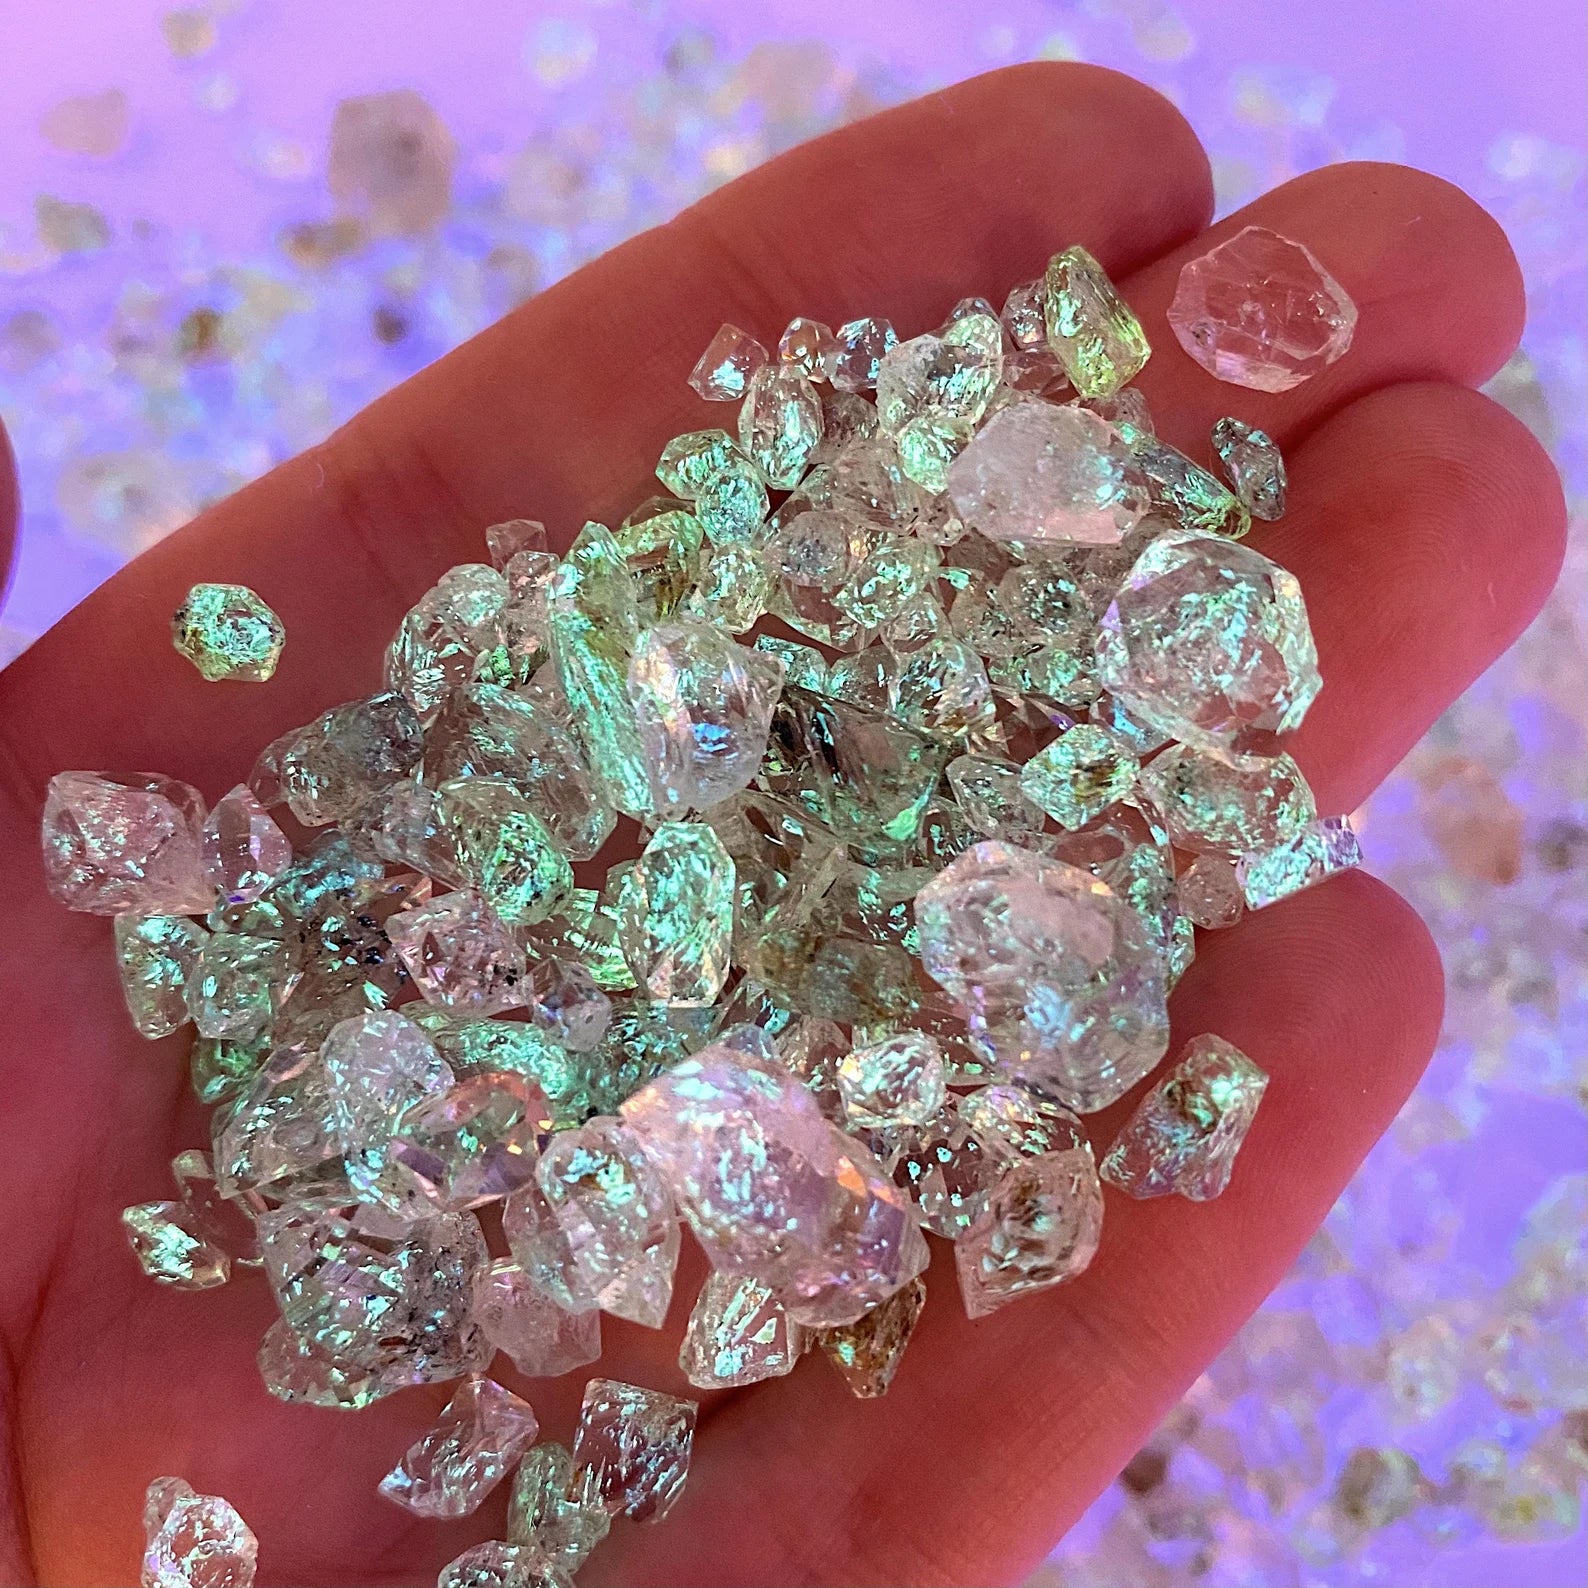 High Quality Rare Petroleum Diamond Quartz Crystals